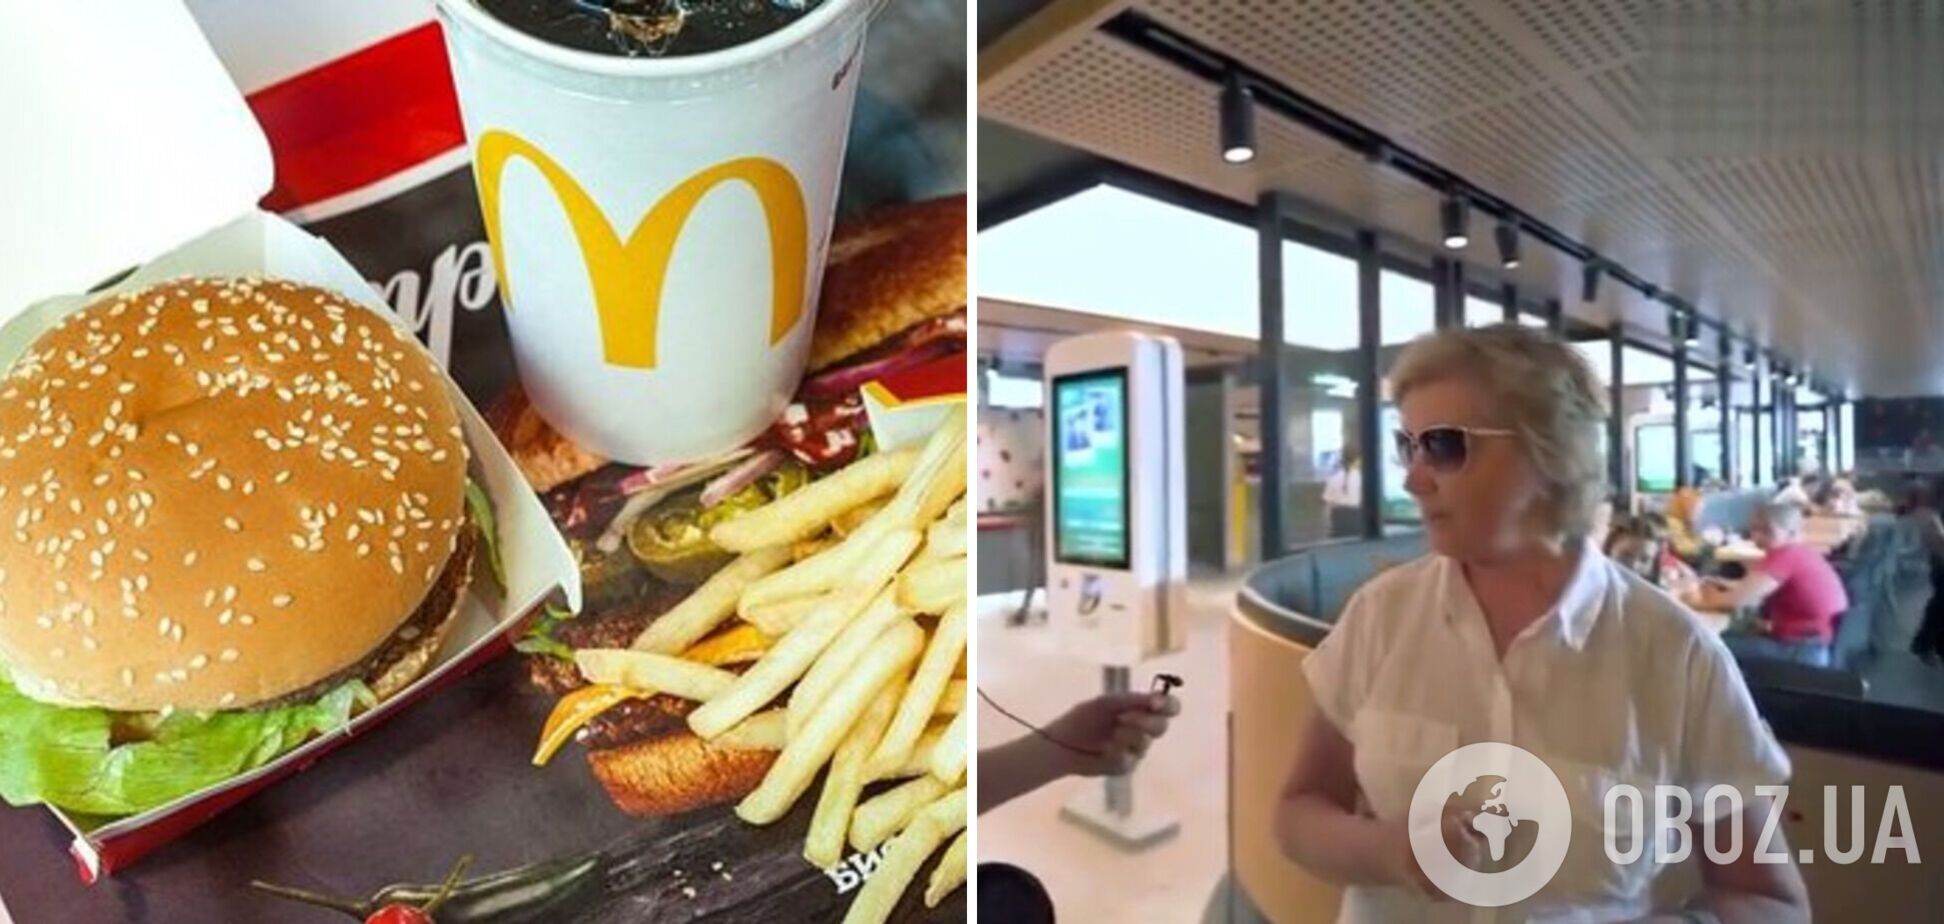 Псевдопатриотка с американским бургером заявила, что России не нужен McDonald's